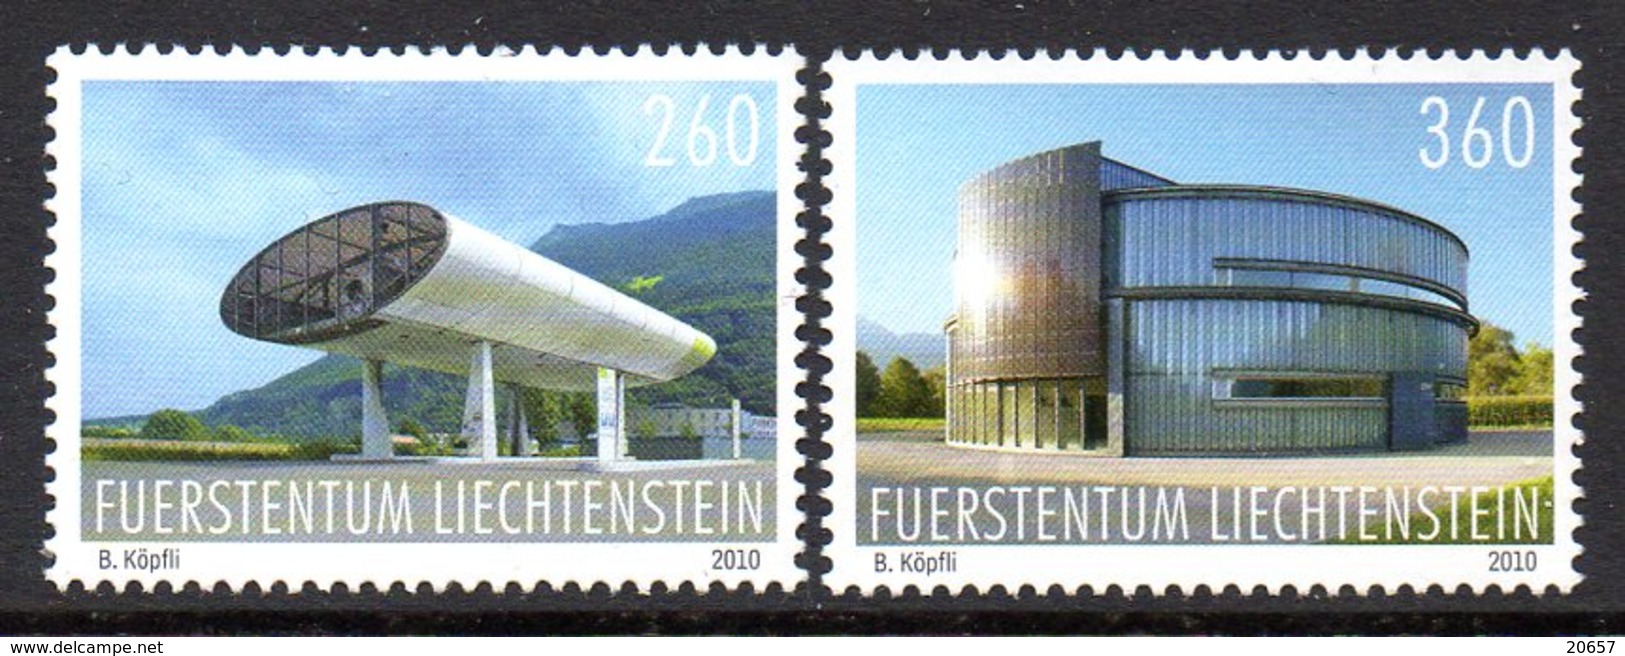 Liechtenstein 1488/89 Station Service De Gaz - Gaz